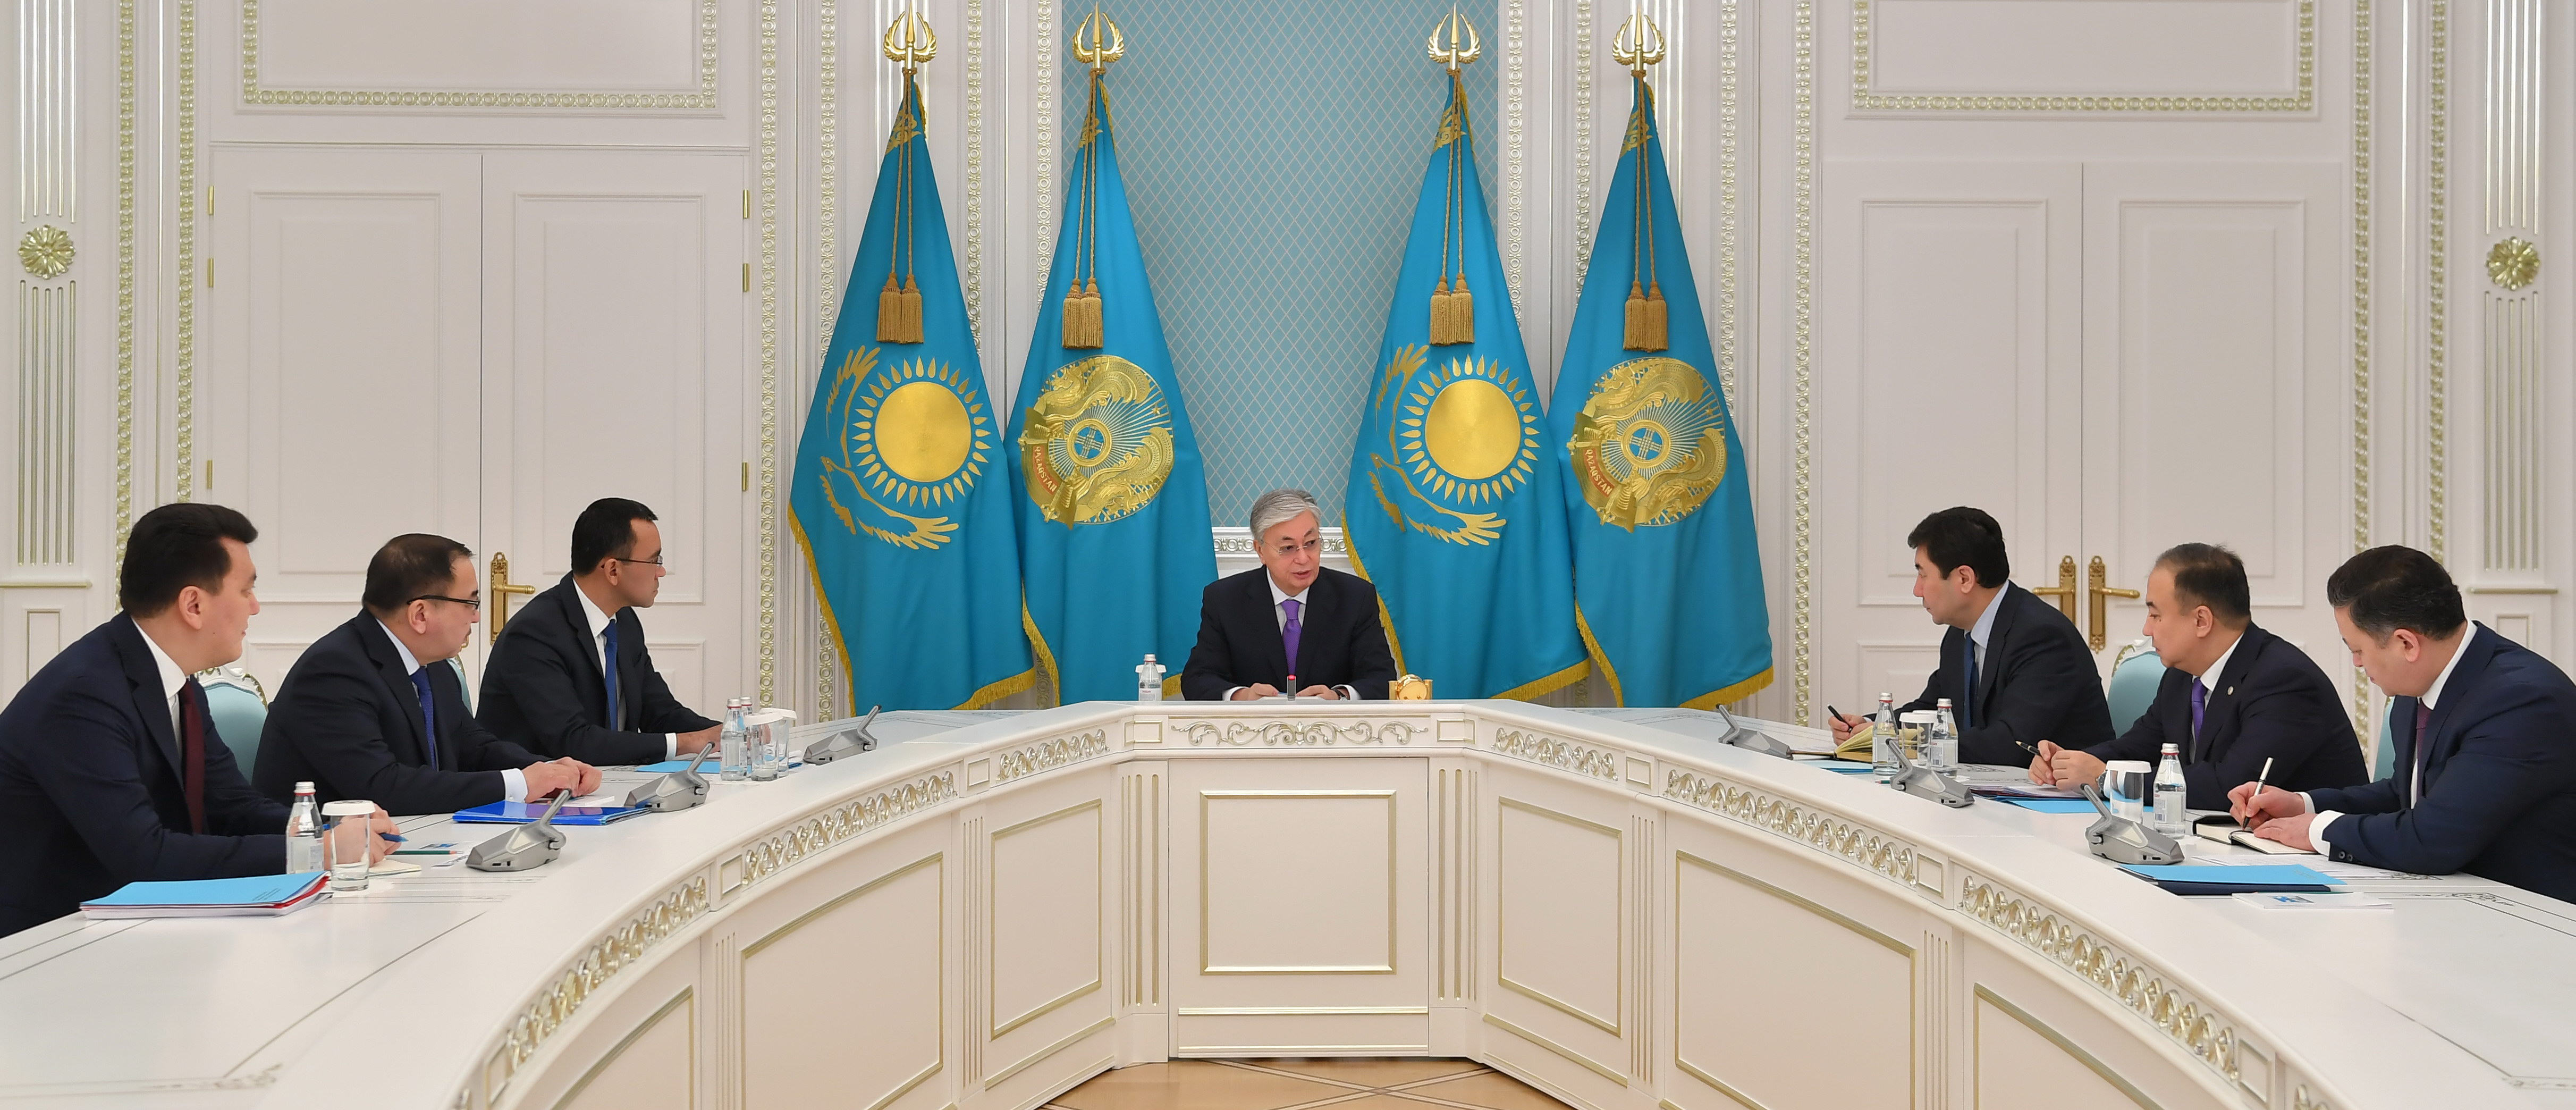 Токаев обозначил приоритеты работы на 2020 год для своей администрации